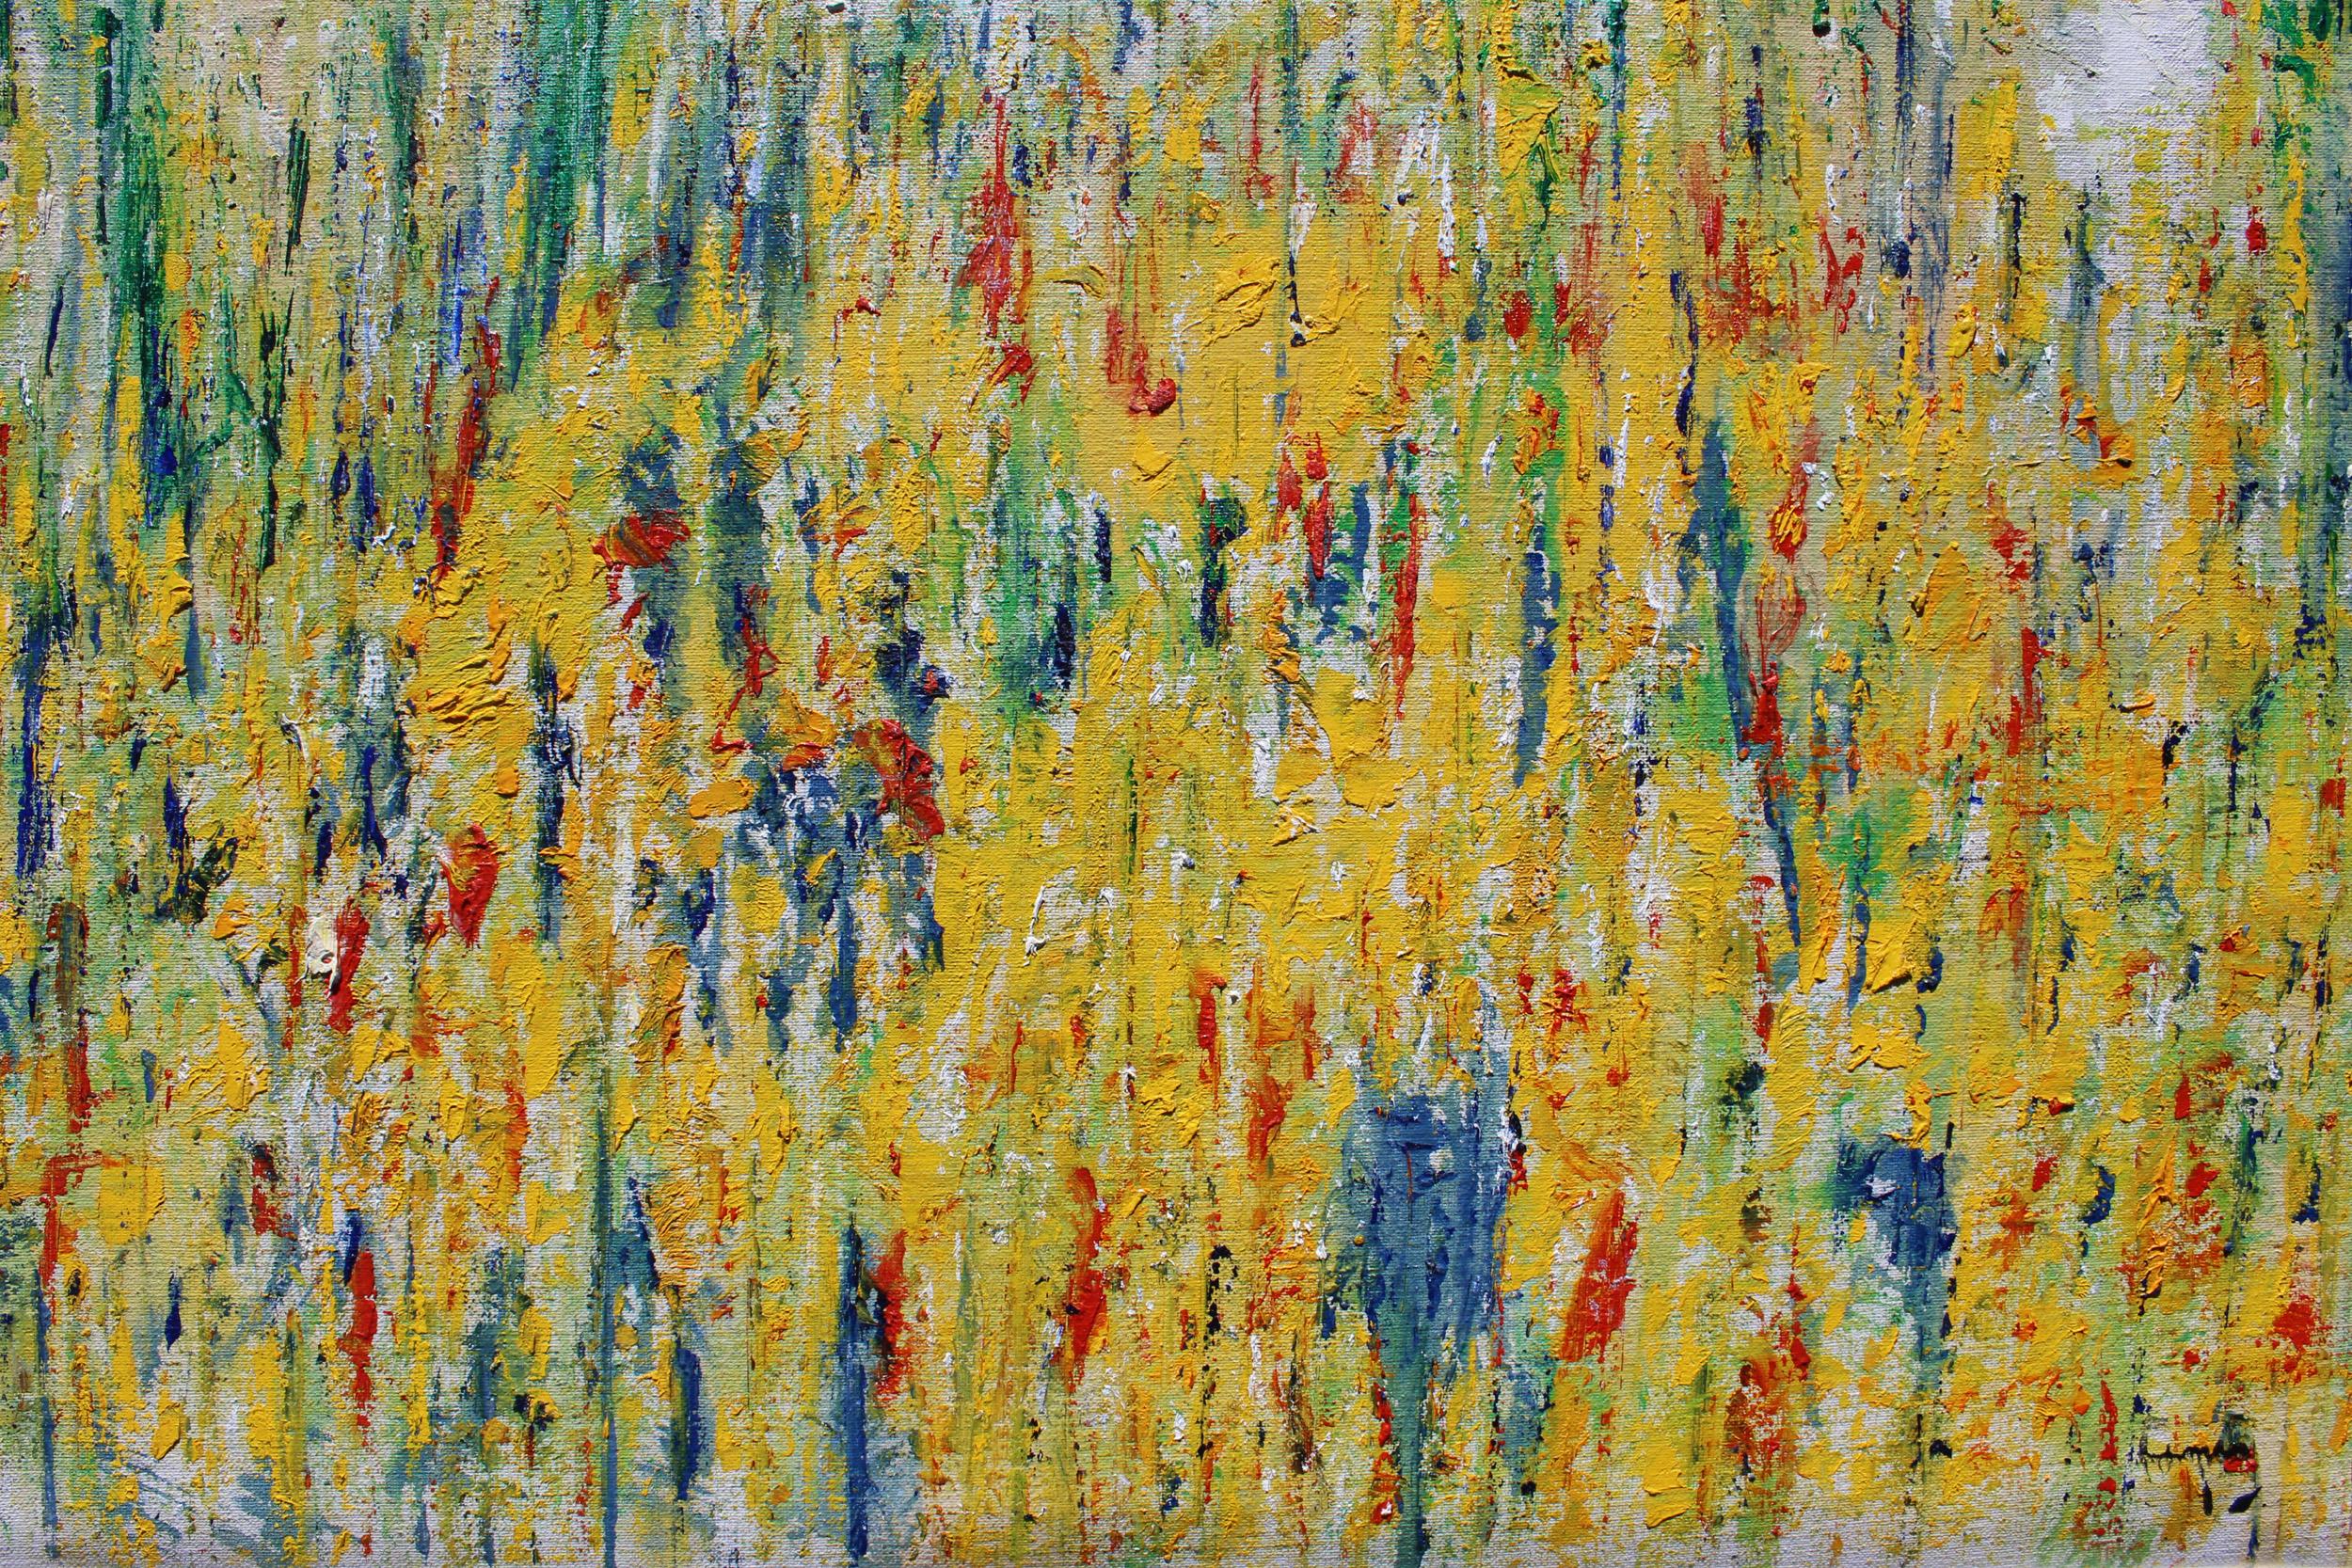 Abstrakte Landschaft, Woodstock, NY. (Abstrakter Expressionismus), Painting, von Arthur Pinajian